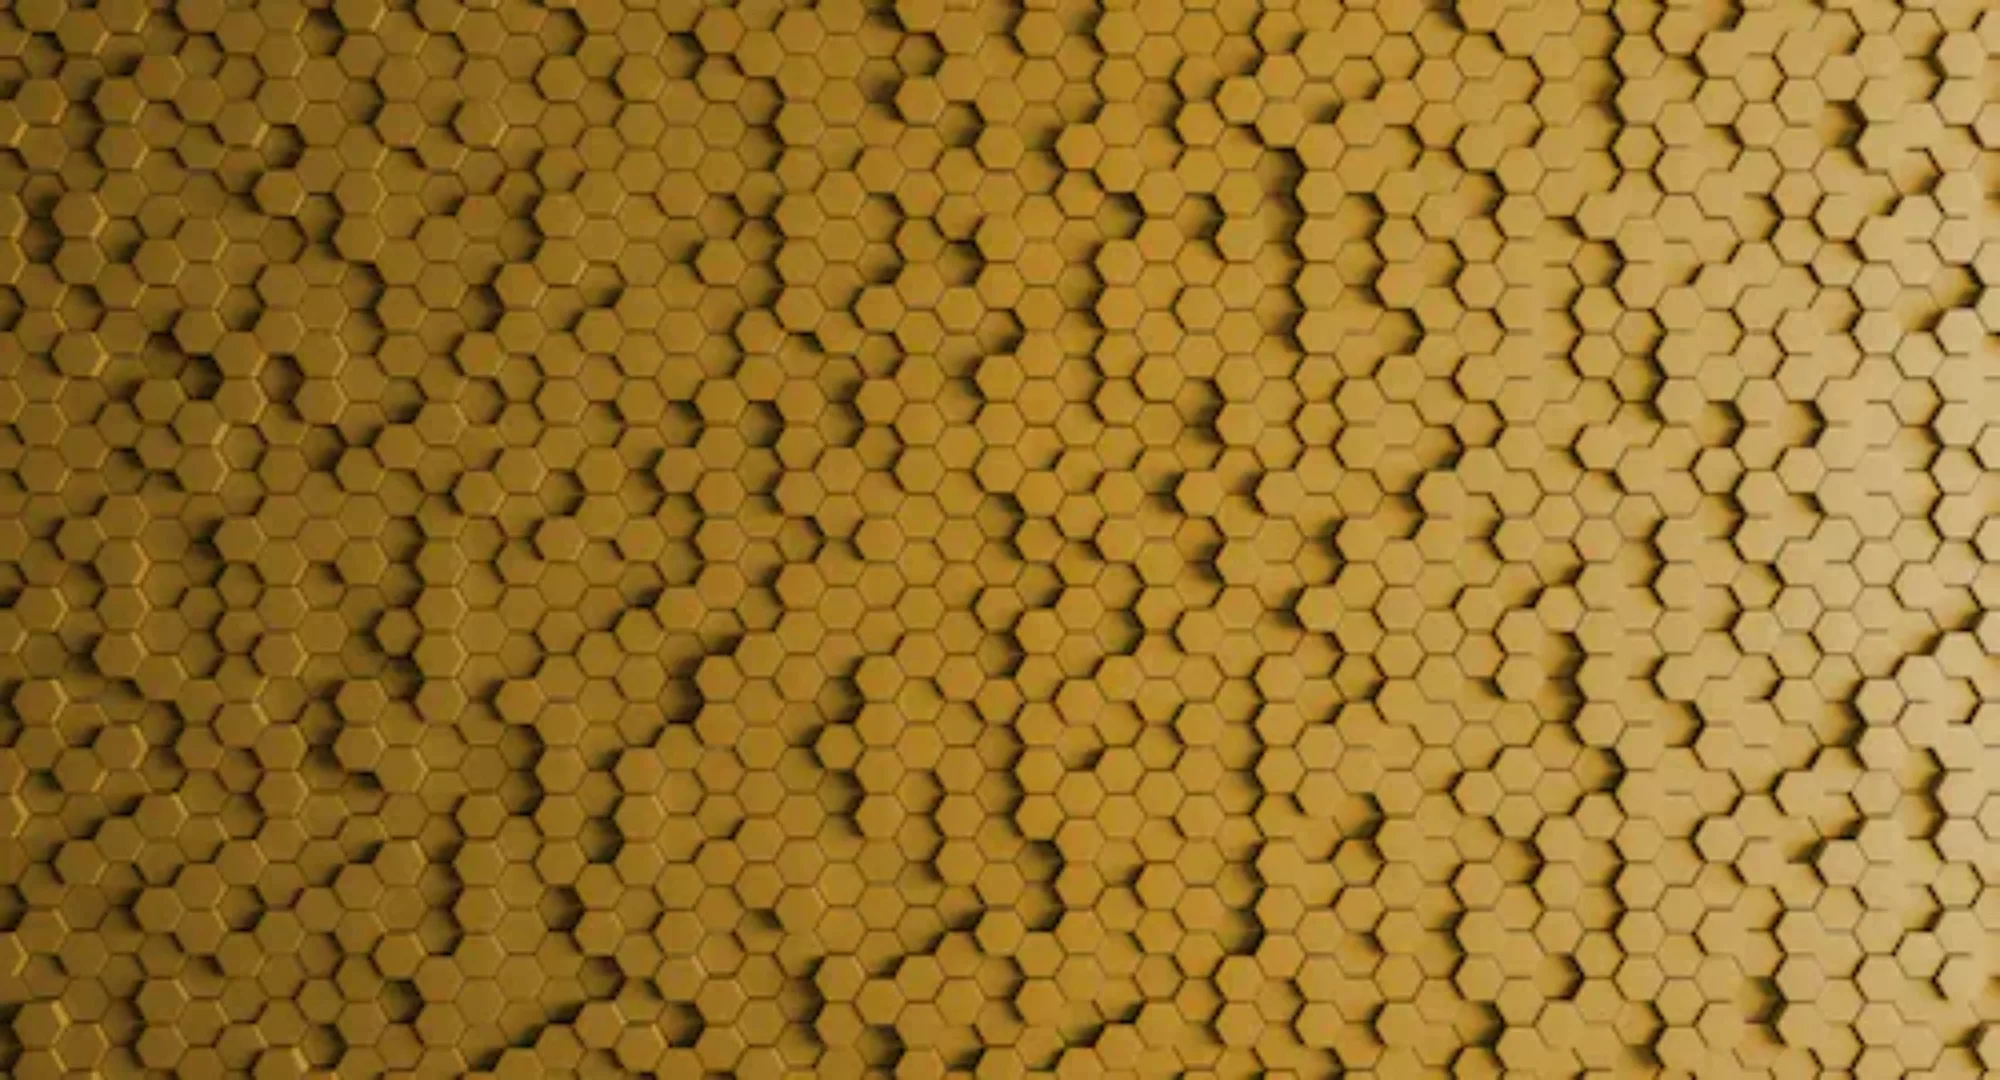 Fototapete  3D Honeycomb Gelb 5,00m x 2,70m FSC® günstig online kaufen